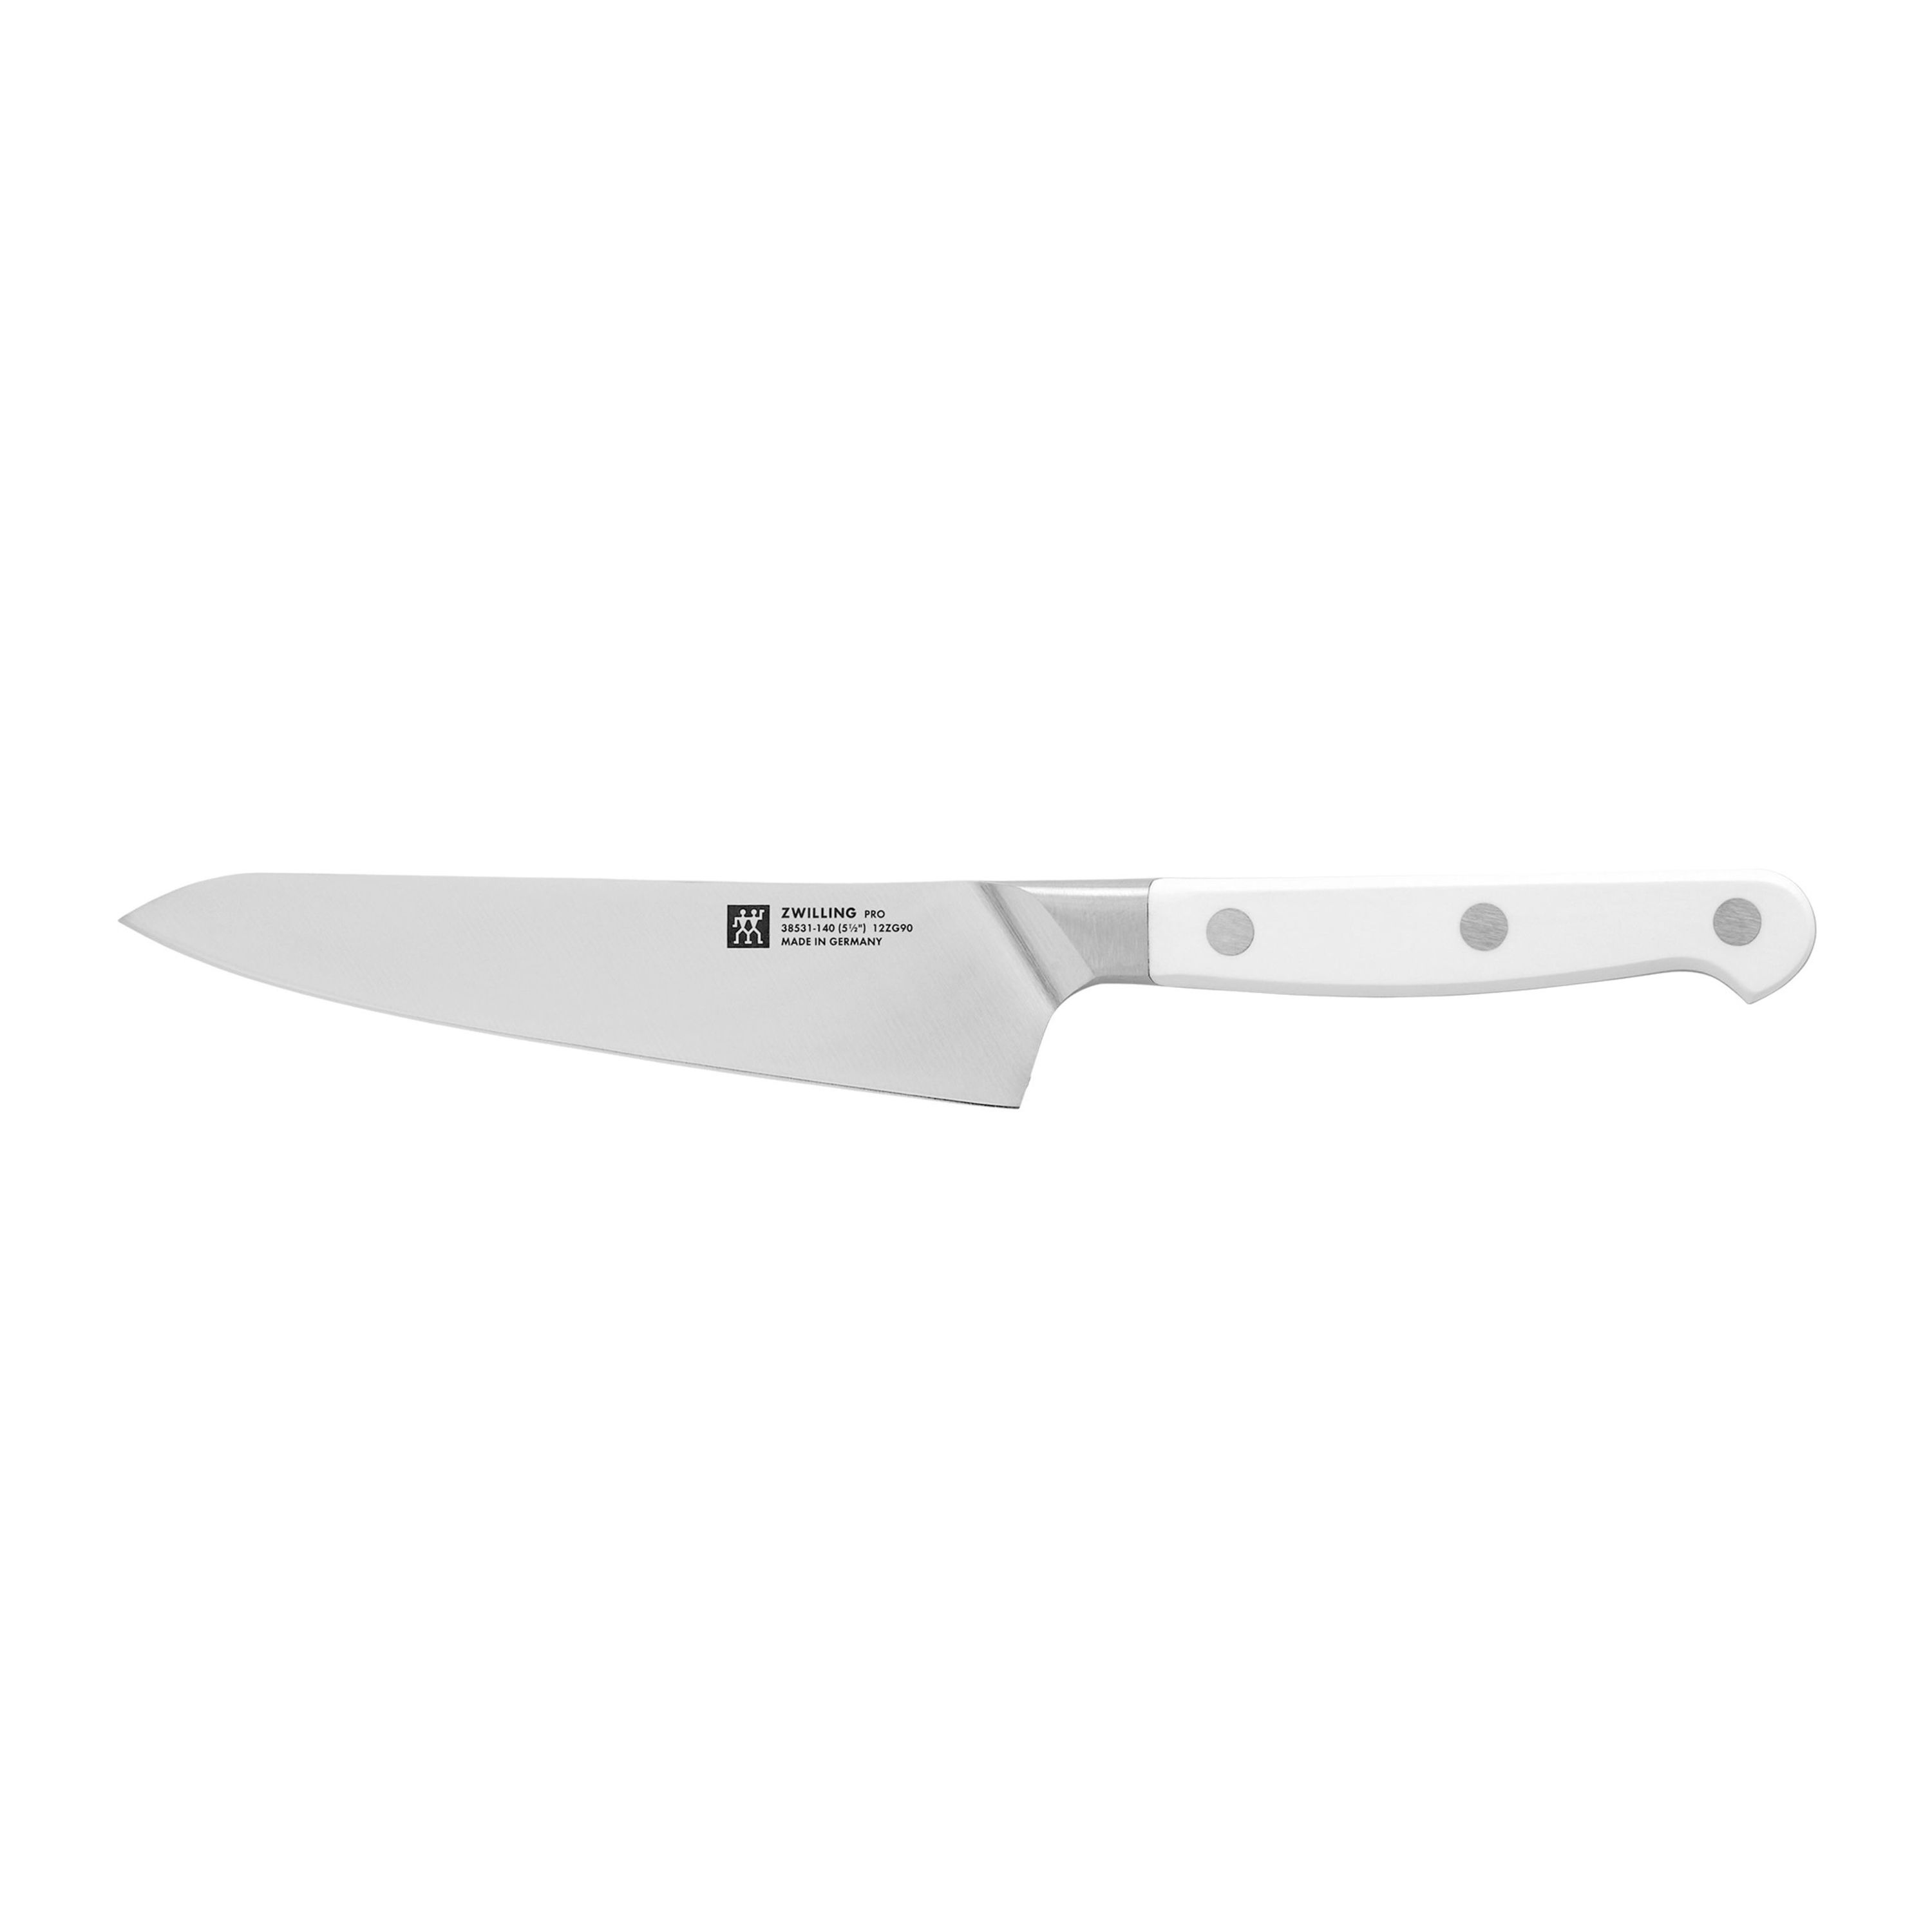 Coltello da chef per bambini ZWILLING Twinny, 10 cm, con protezione per le  dita, coltello in acciaio inossidabile - Germania, Nuova - Piattaforma  all'ingrosso